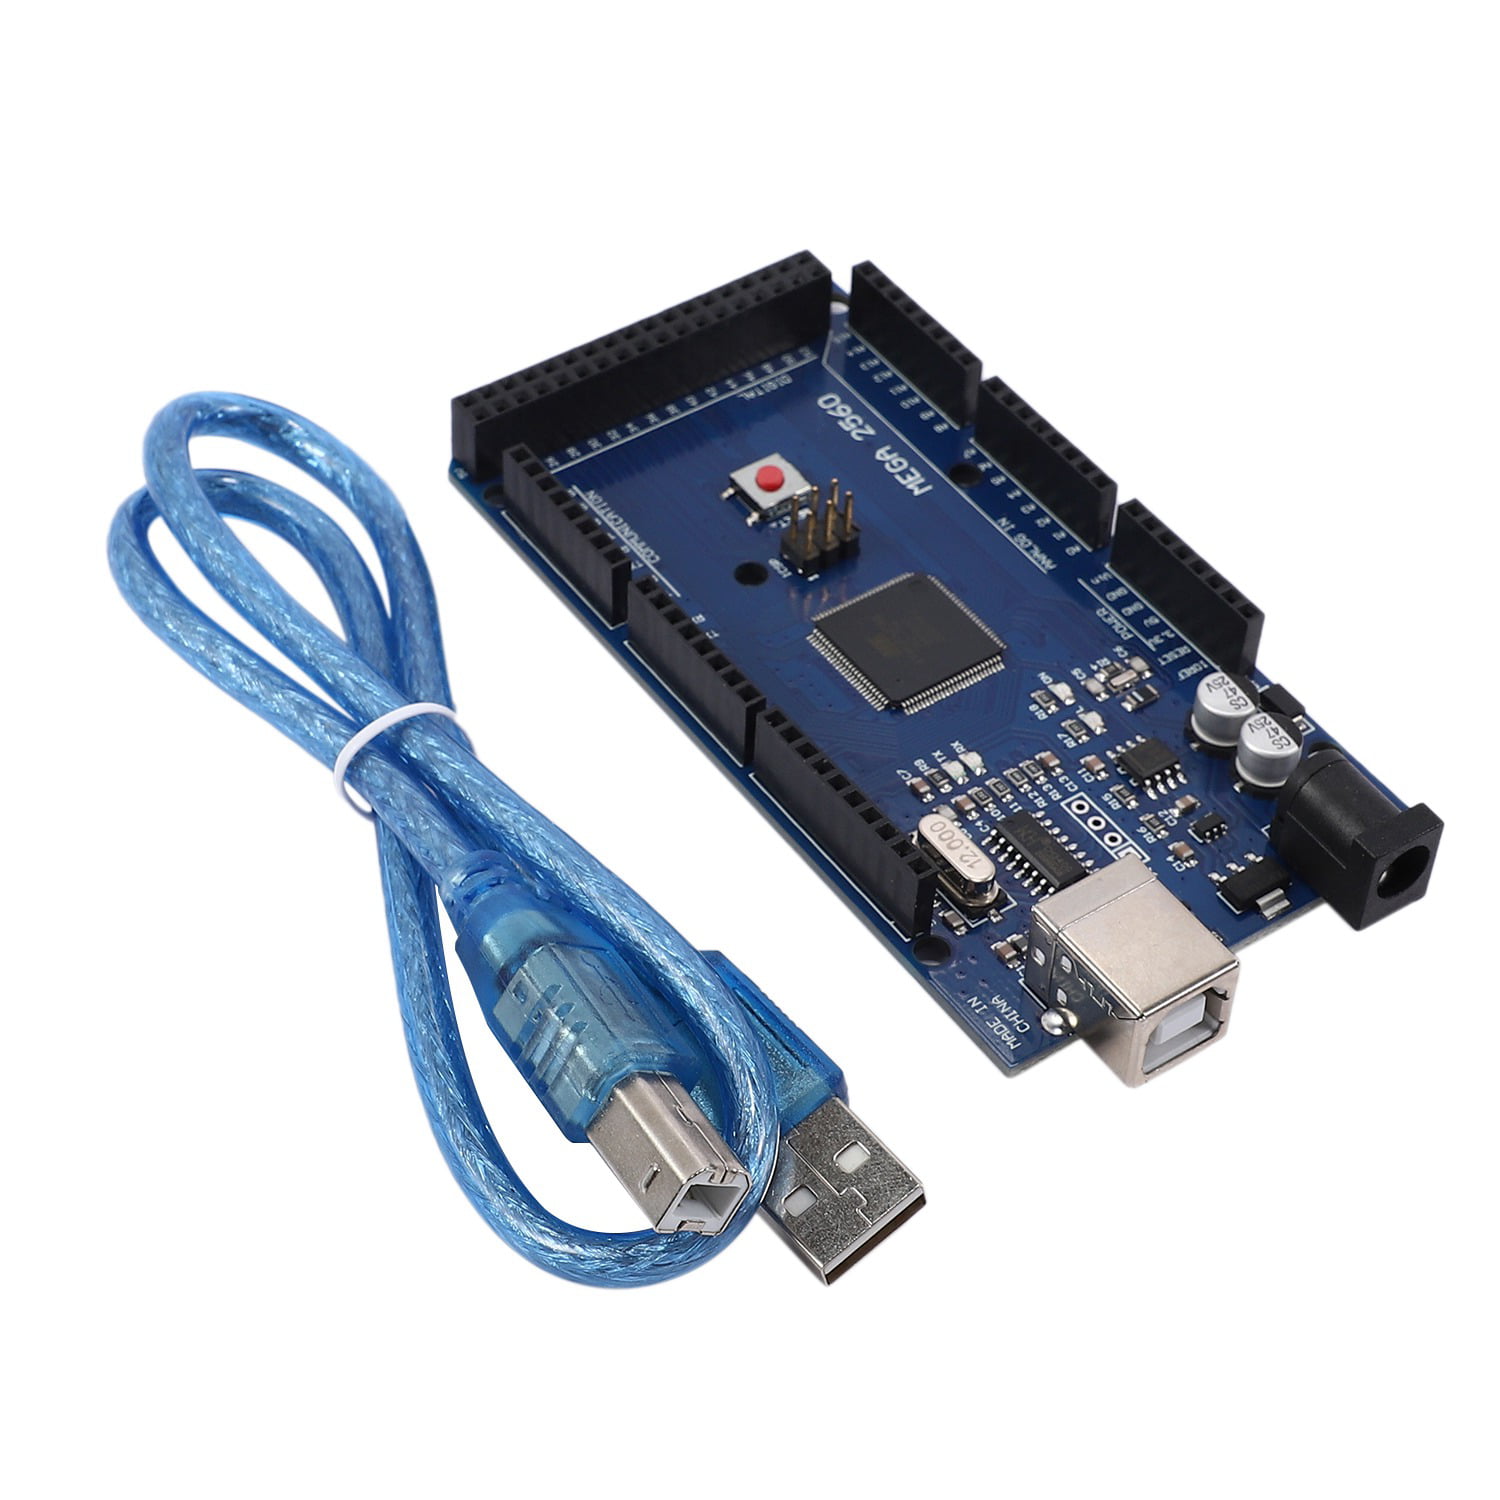 cable USB Mega 2560 r3 Starter Set-Arduino comp Board Atmel ATmega 2560